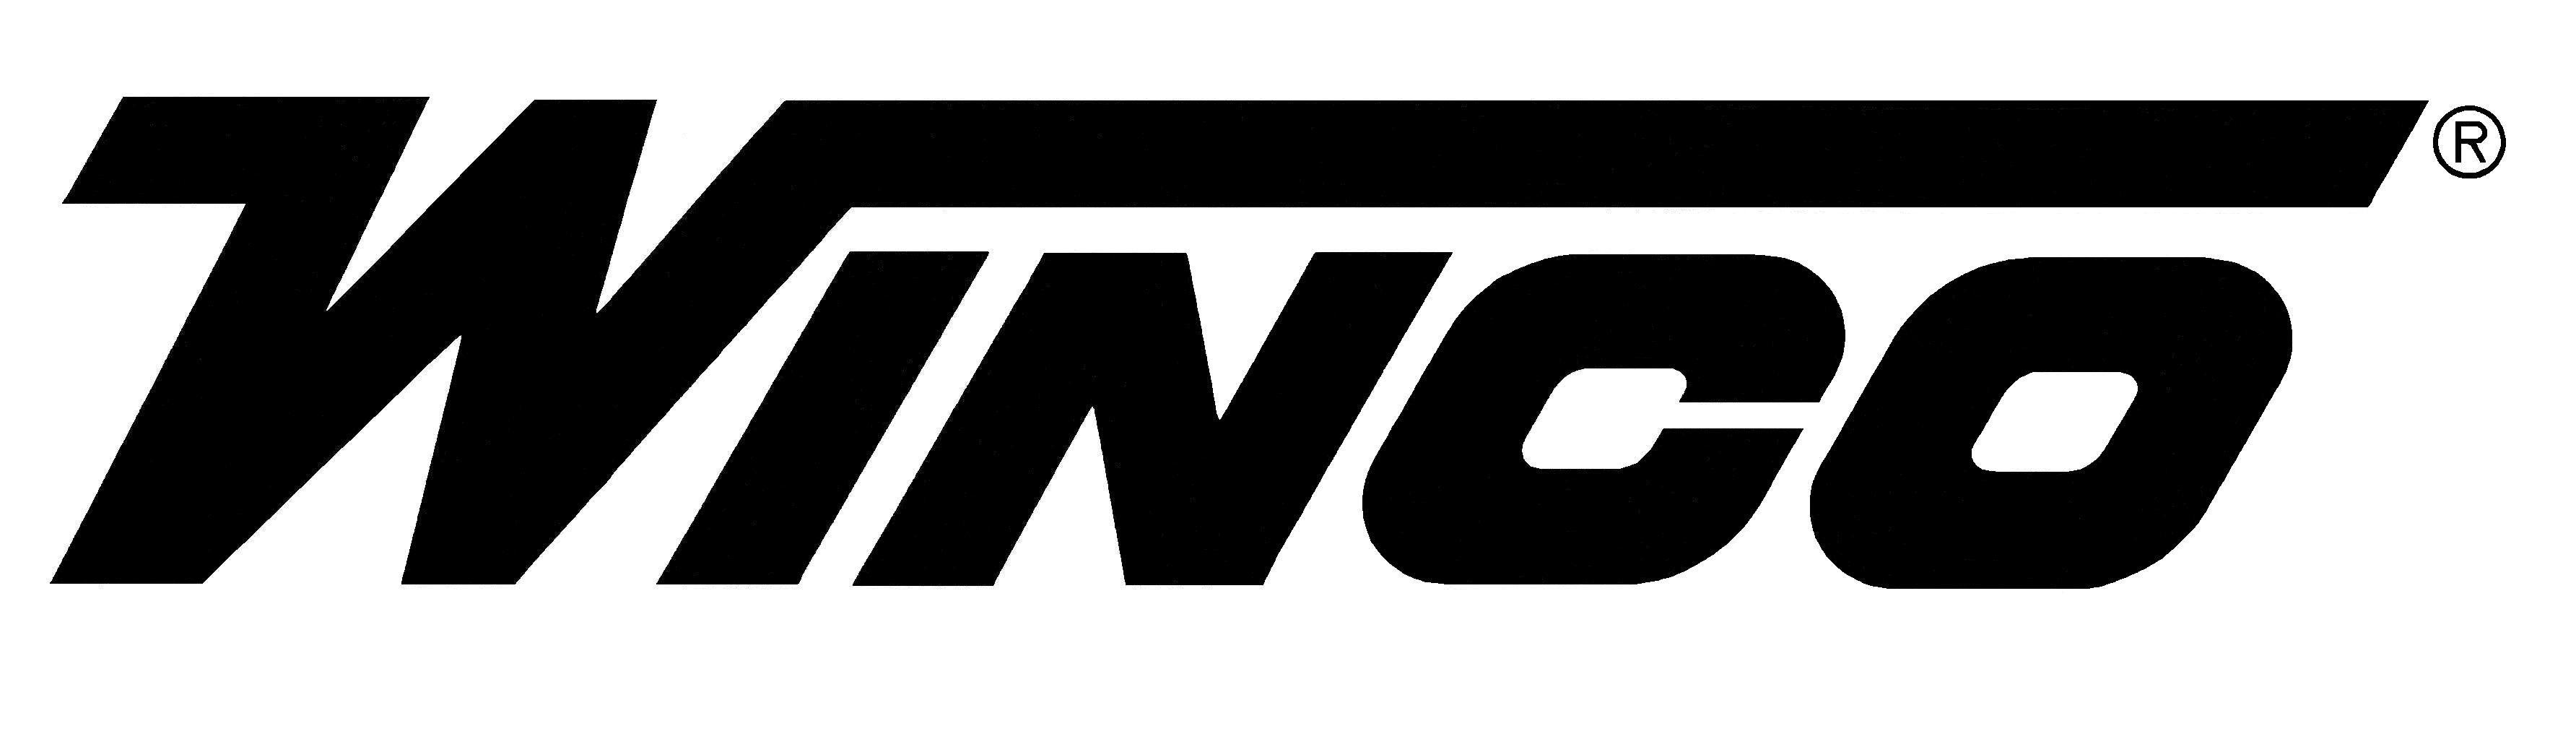 Winco Logo - Winco Logos